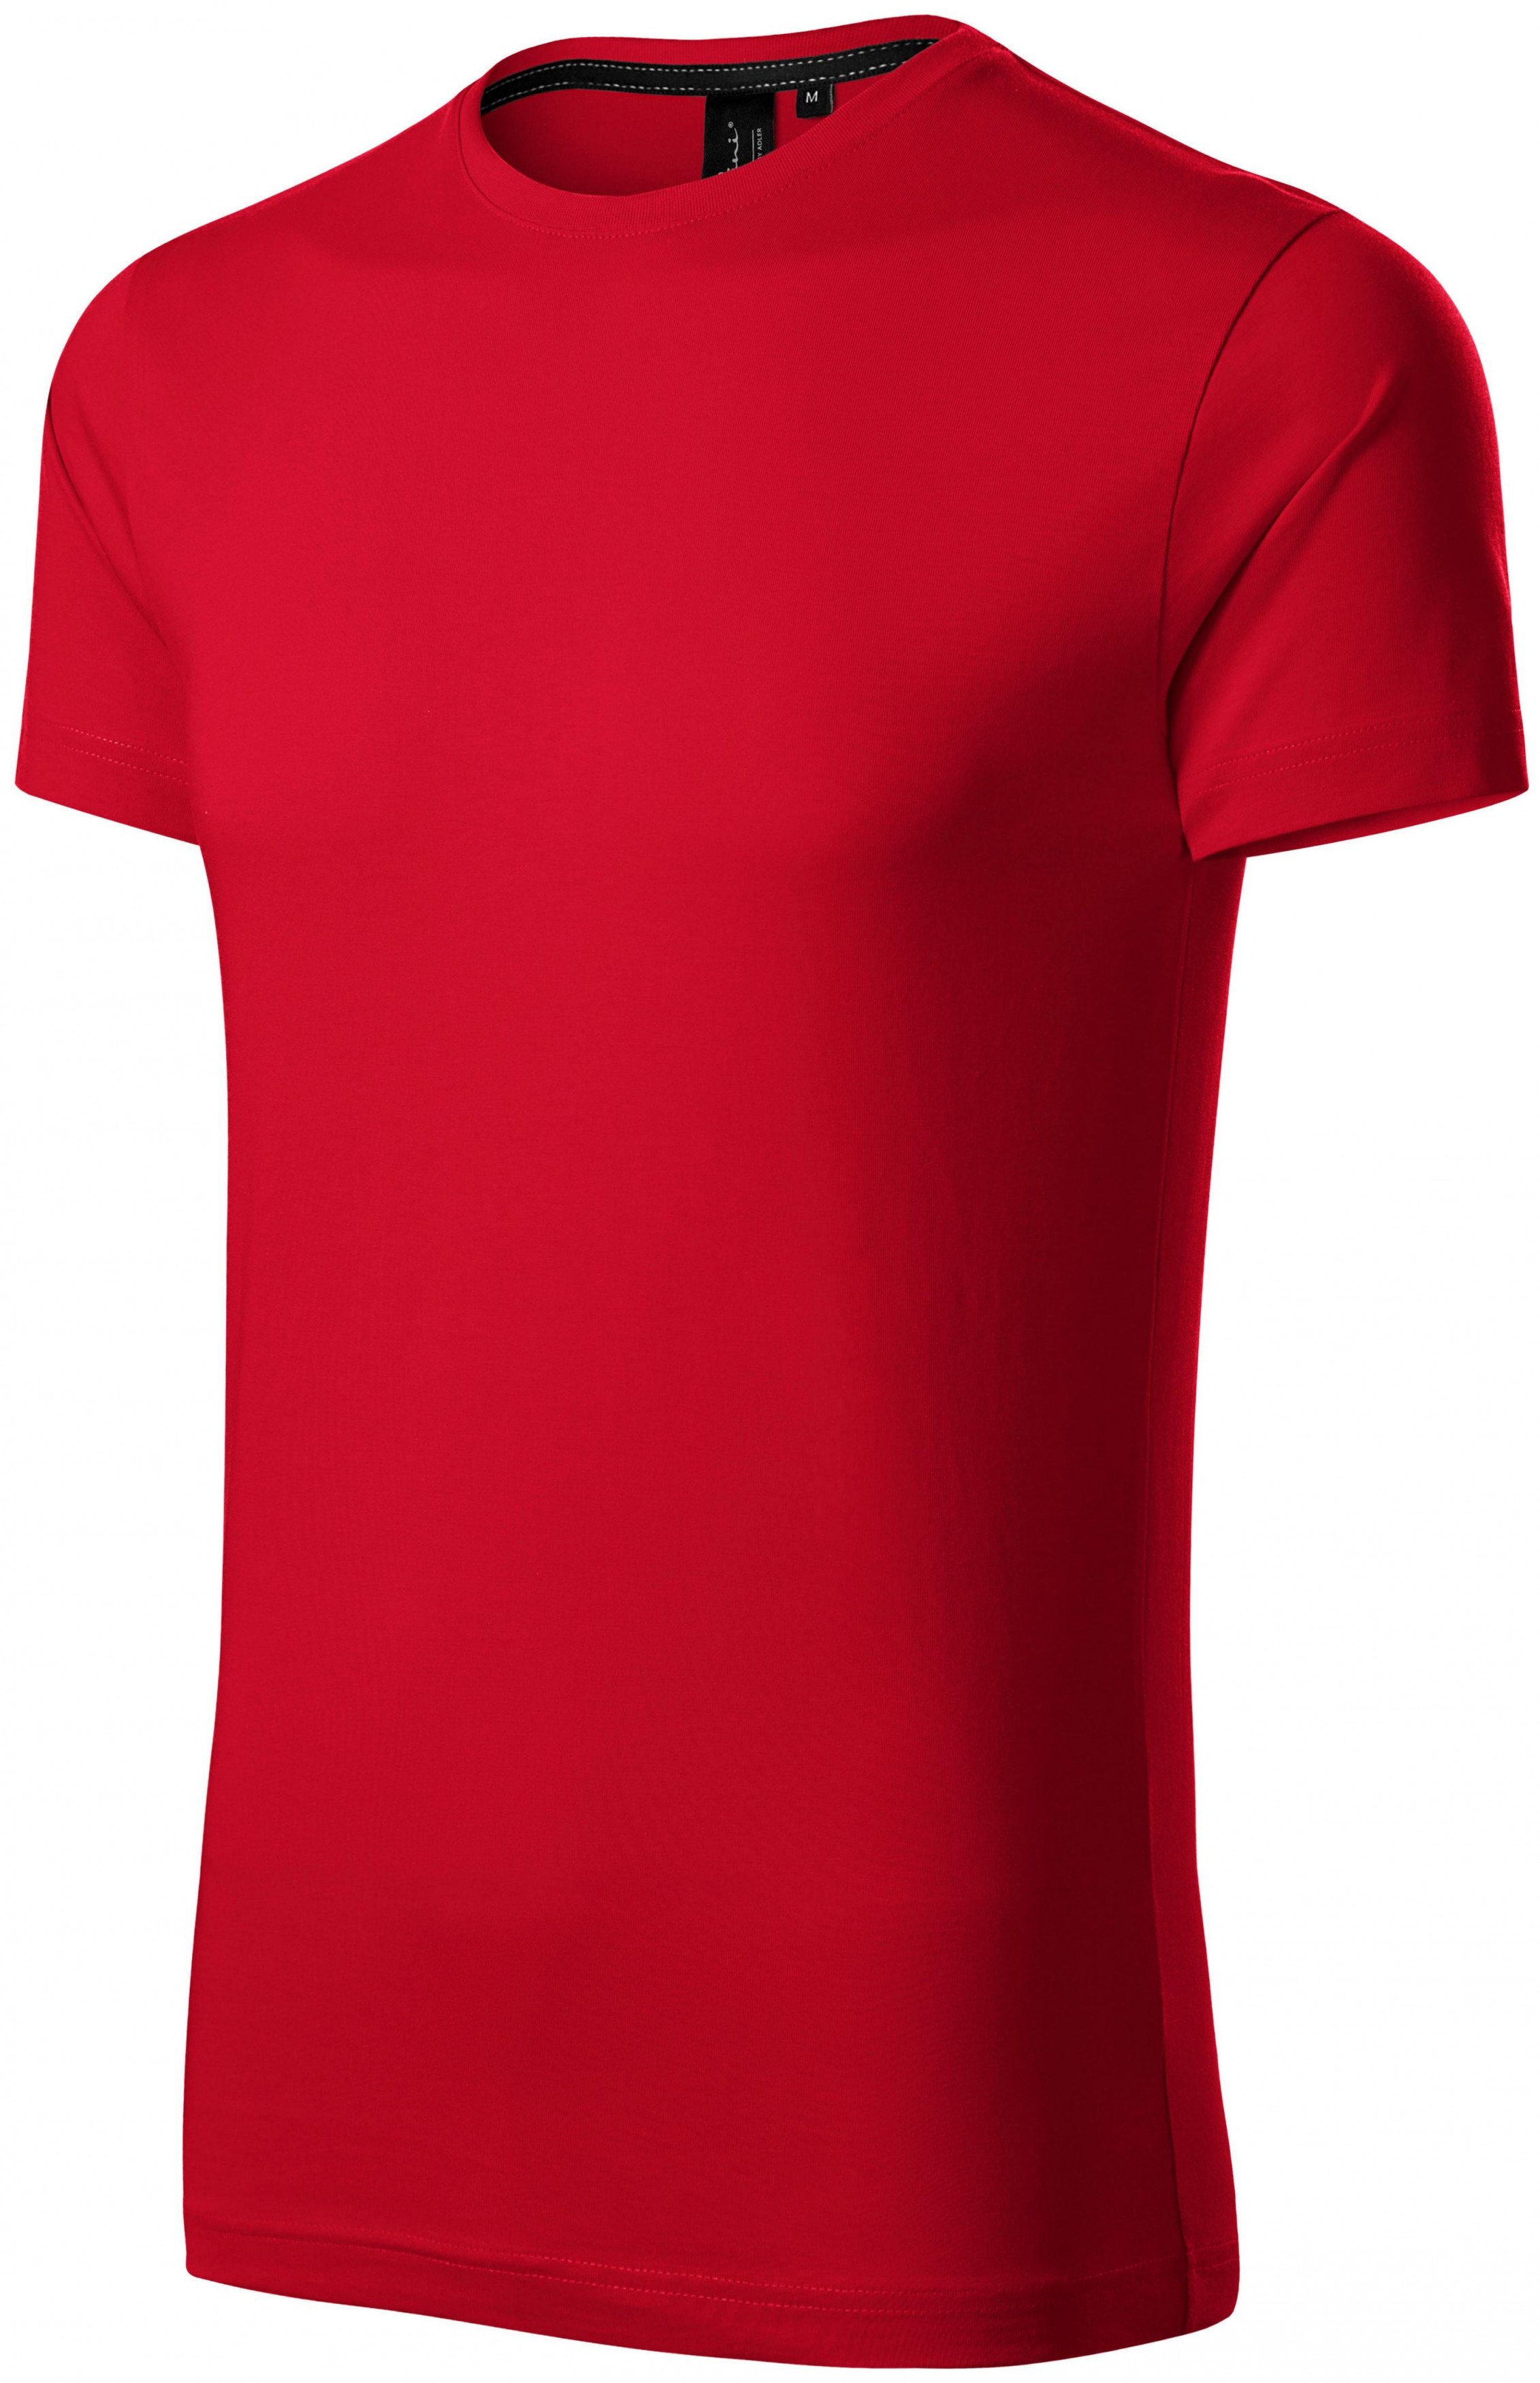 Exkluzívne pánske tričko, formula červená, 2XL